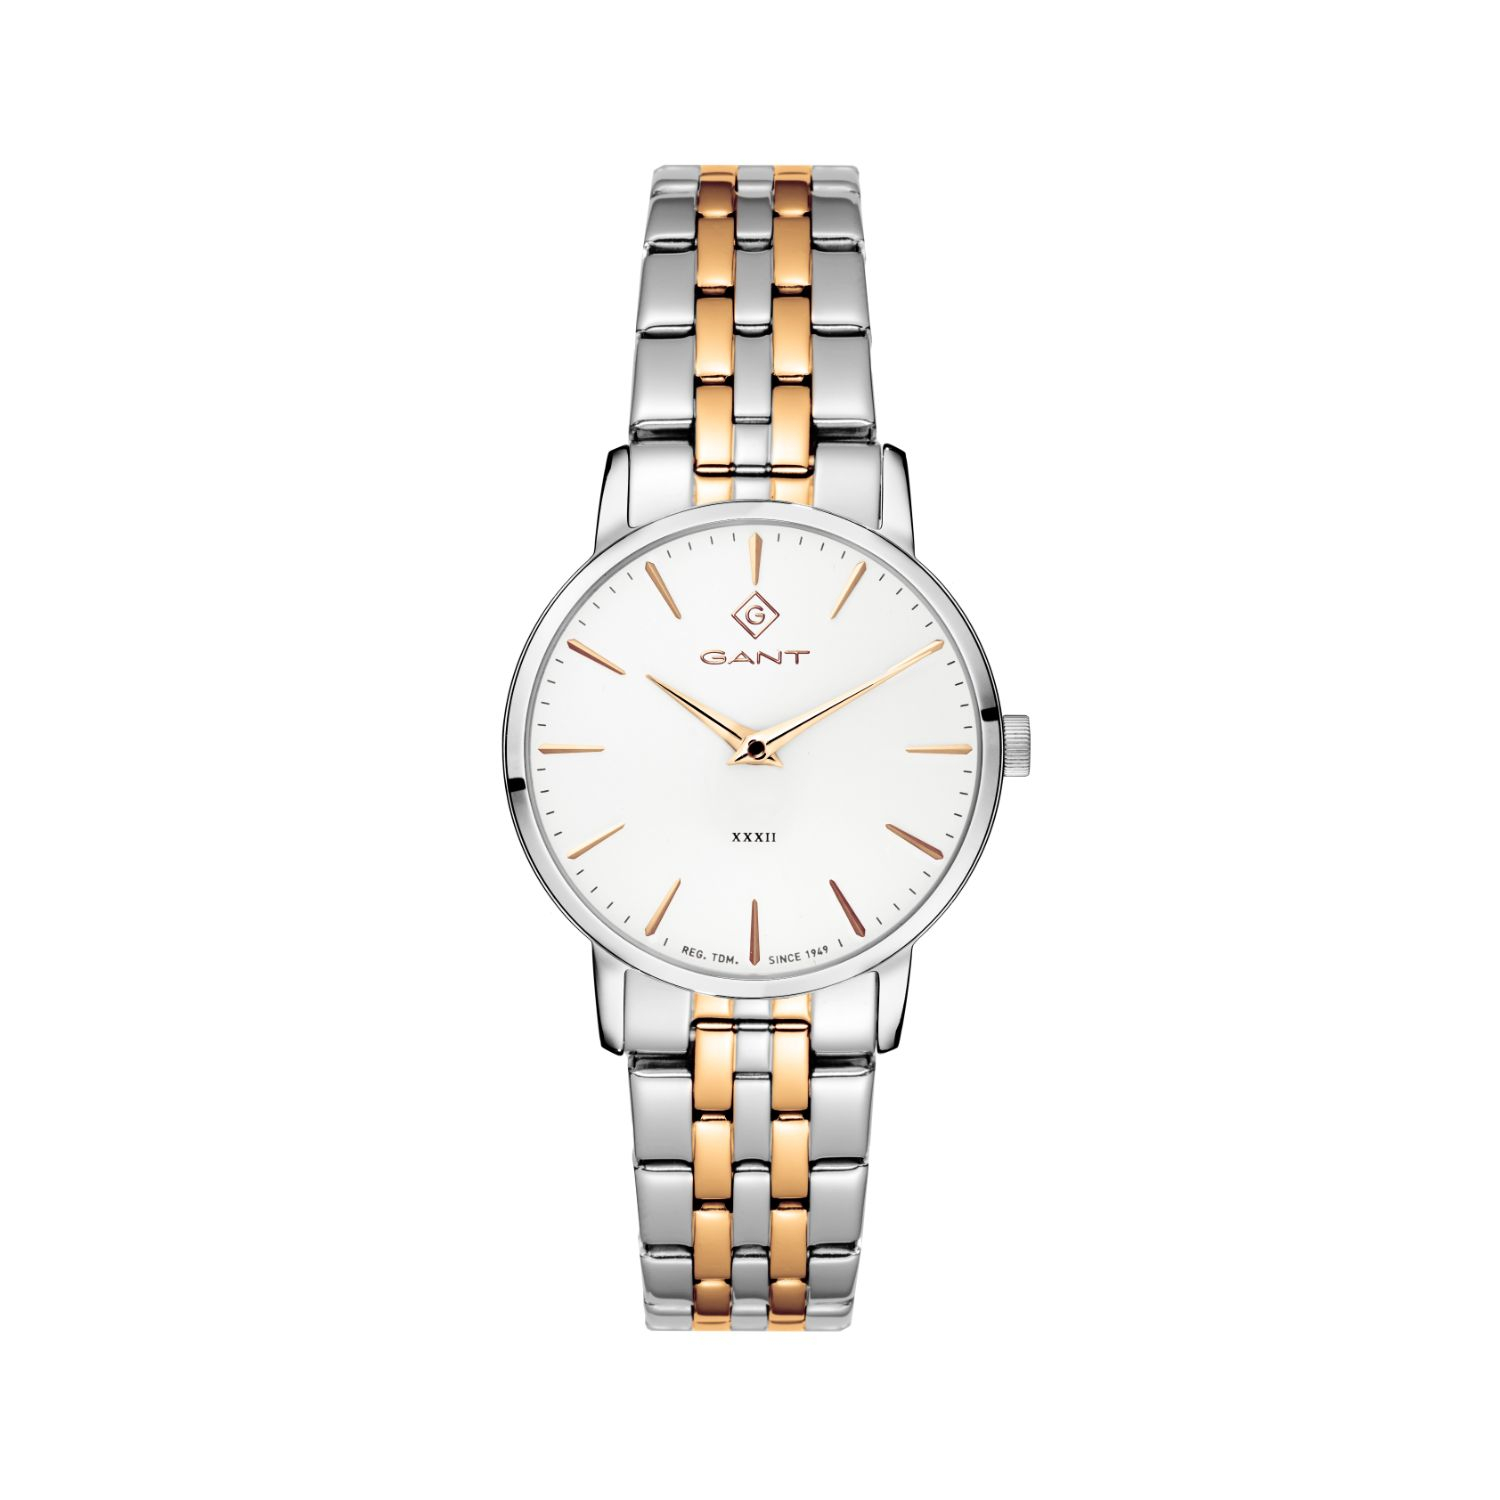 Γυναικείο ρολόι Gant από ανοξείδωτο ατσάλι με λευκό καντράν και δίχρωμο μπρασελέ.